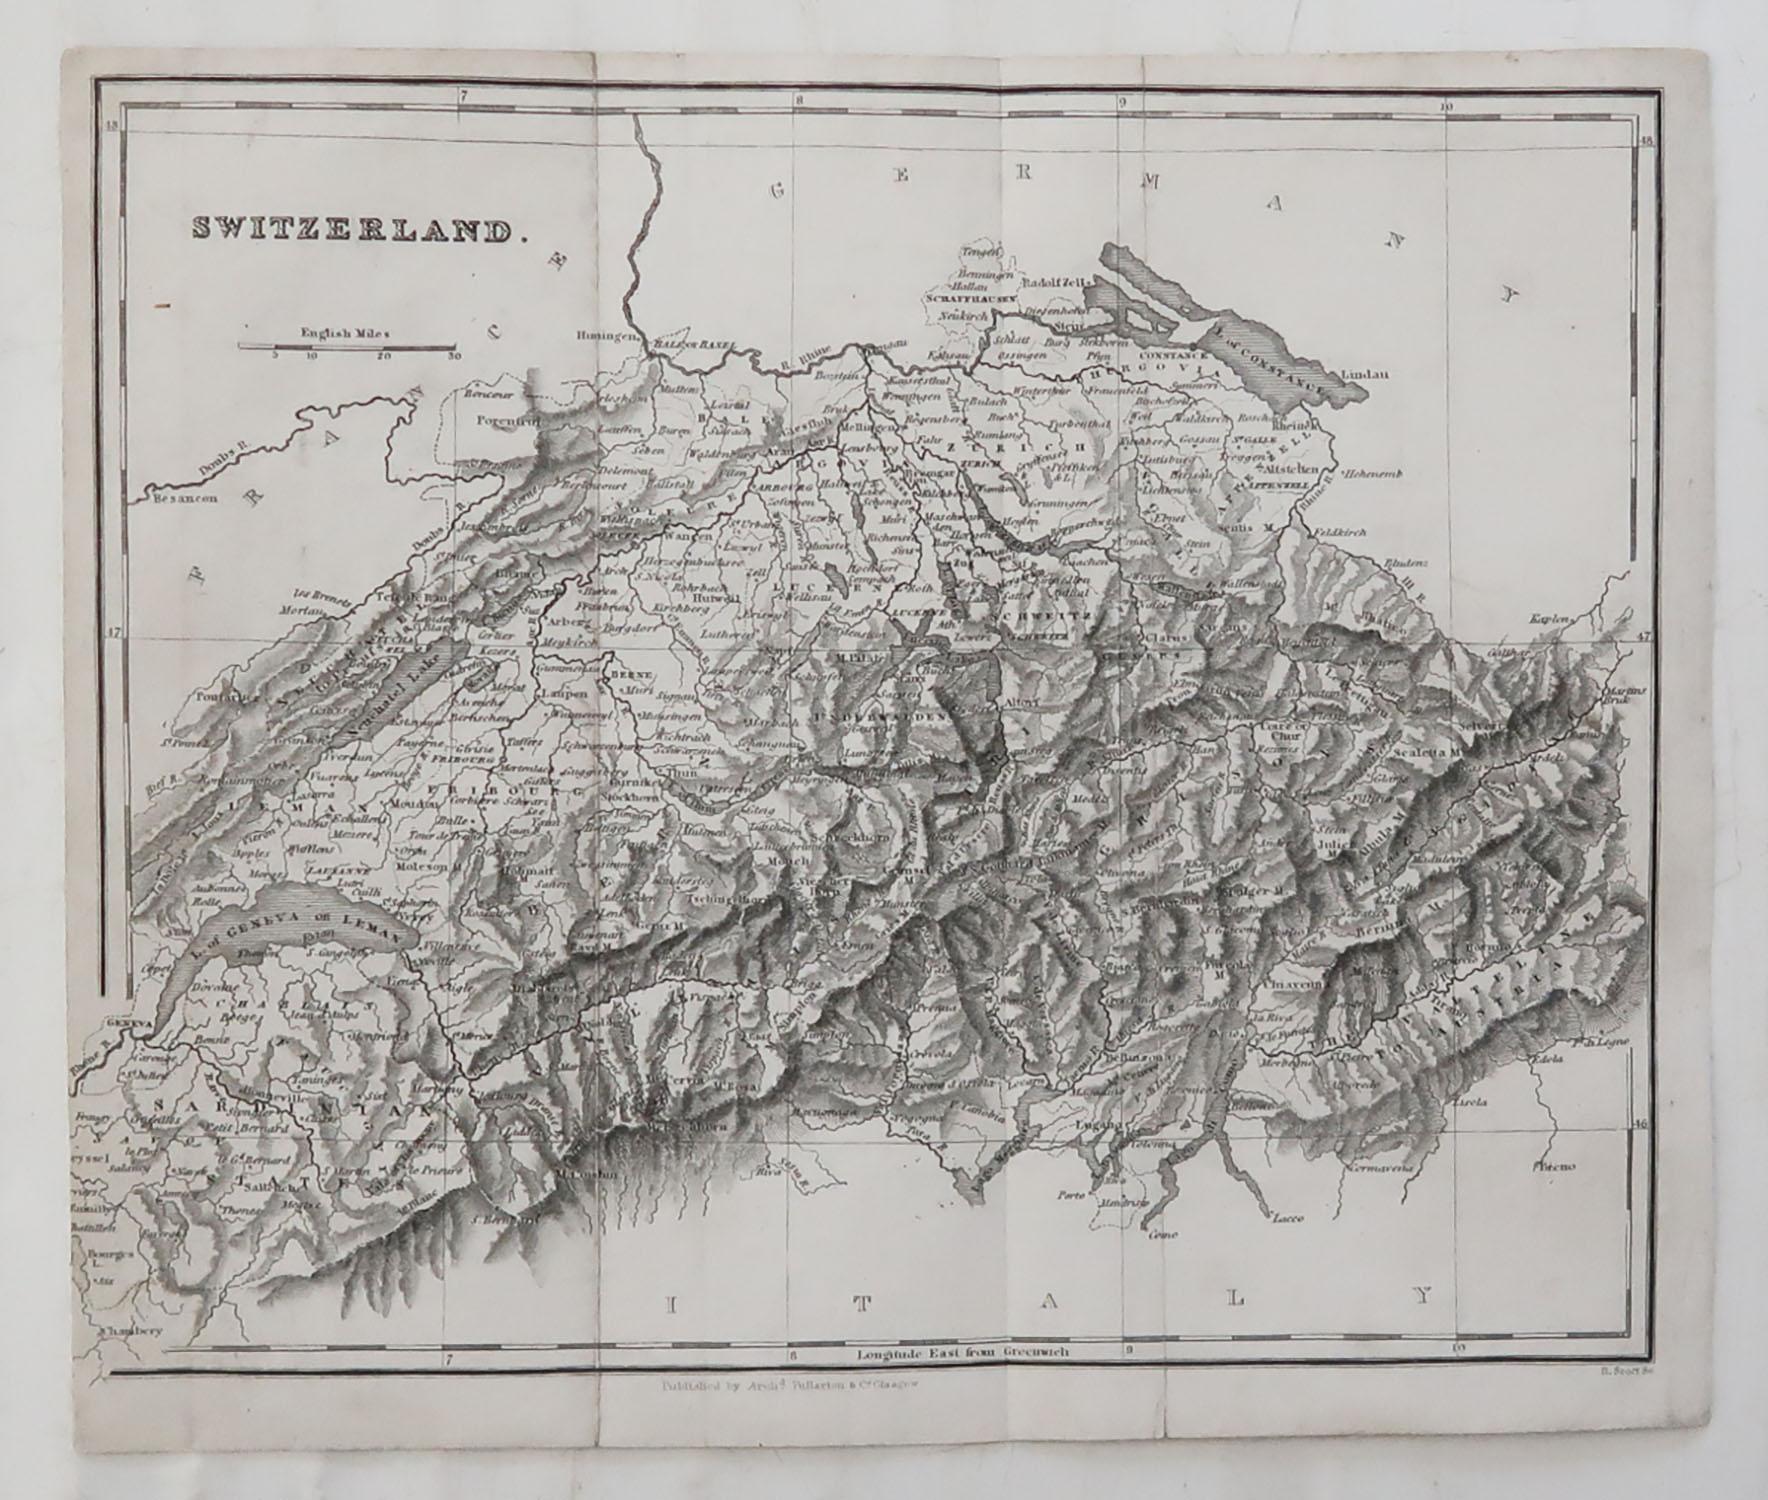 Other Original Antique Map of Switzerland, circa 1840